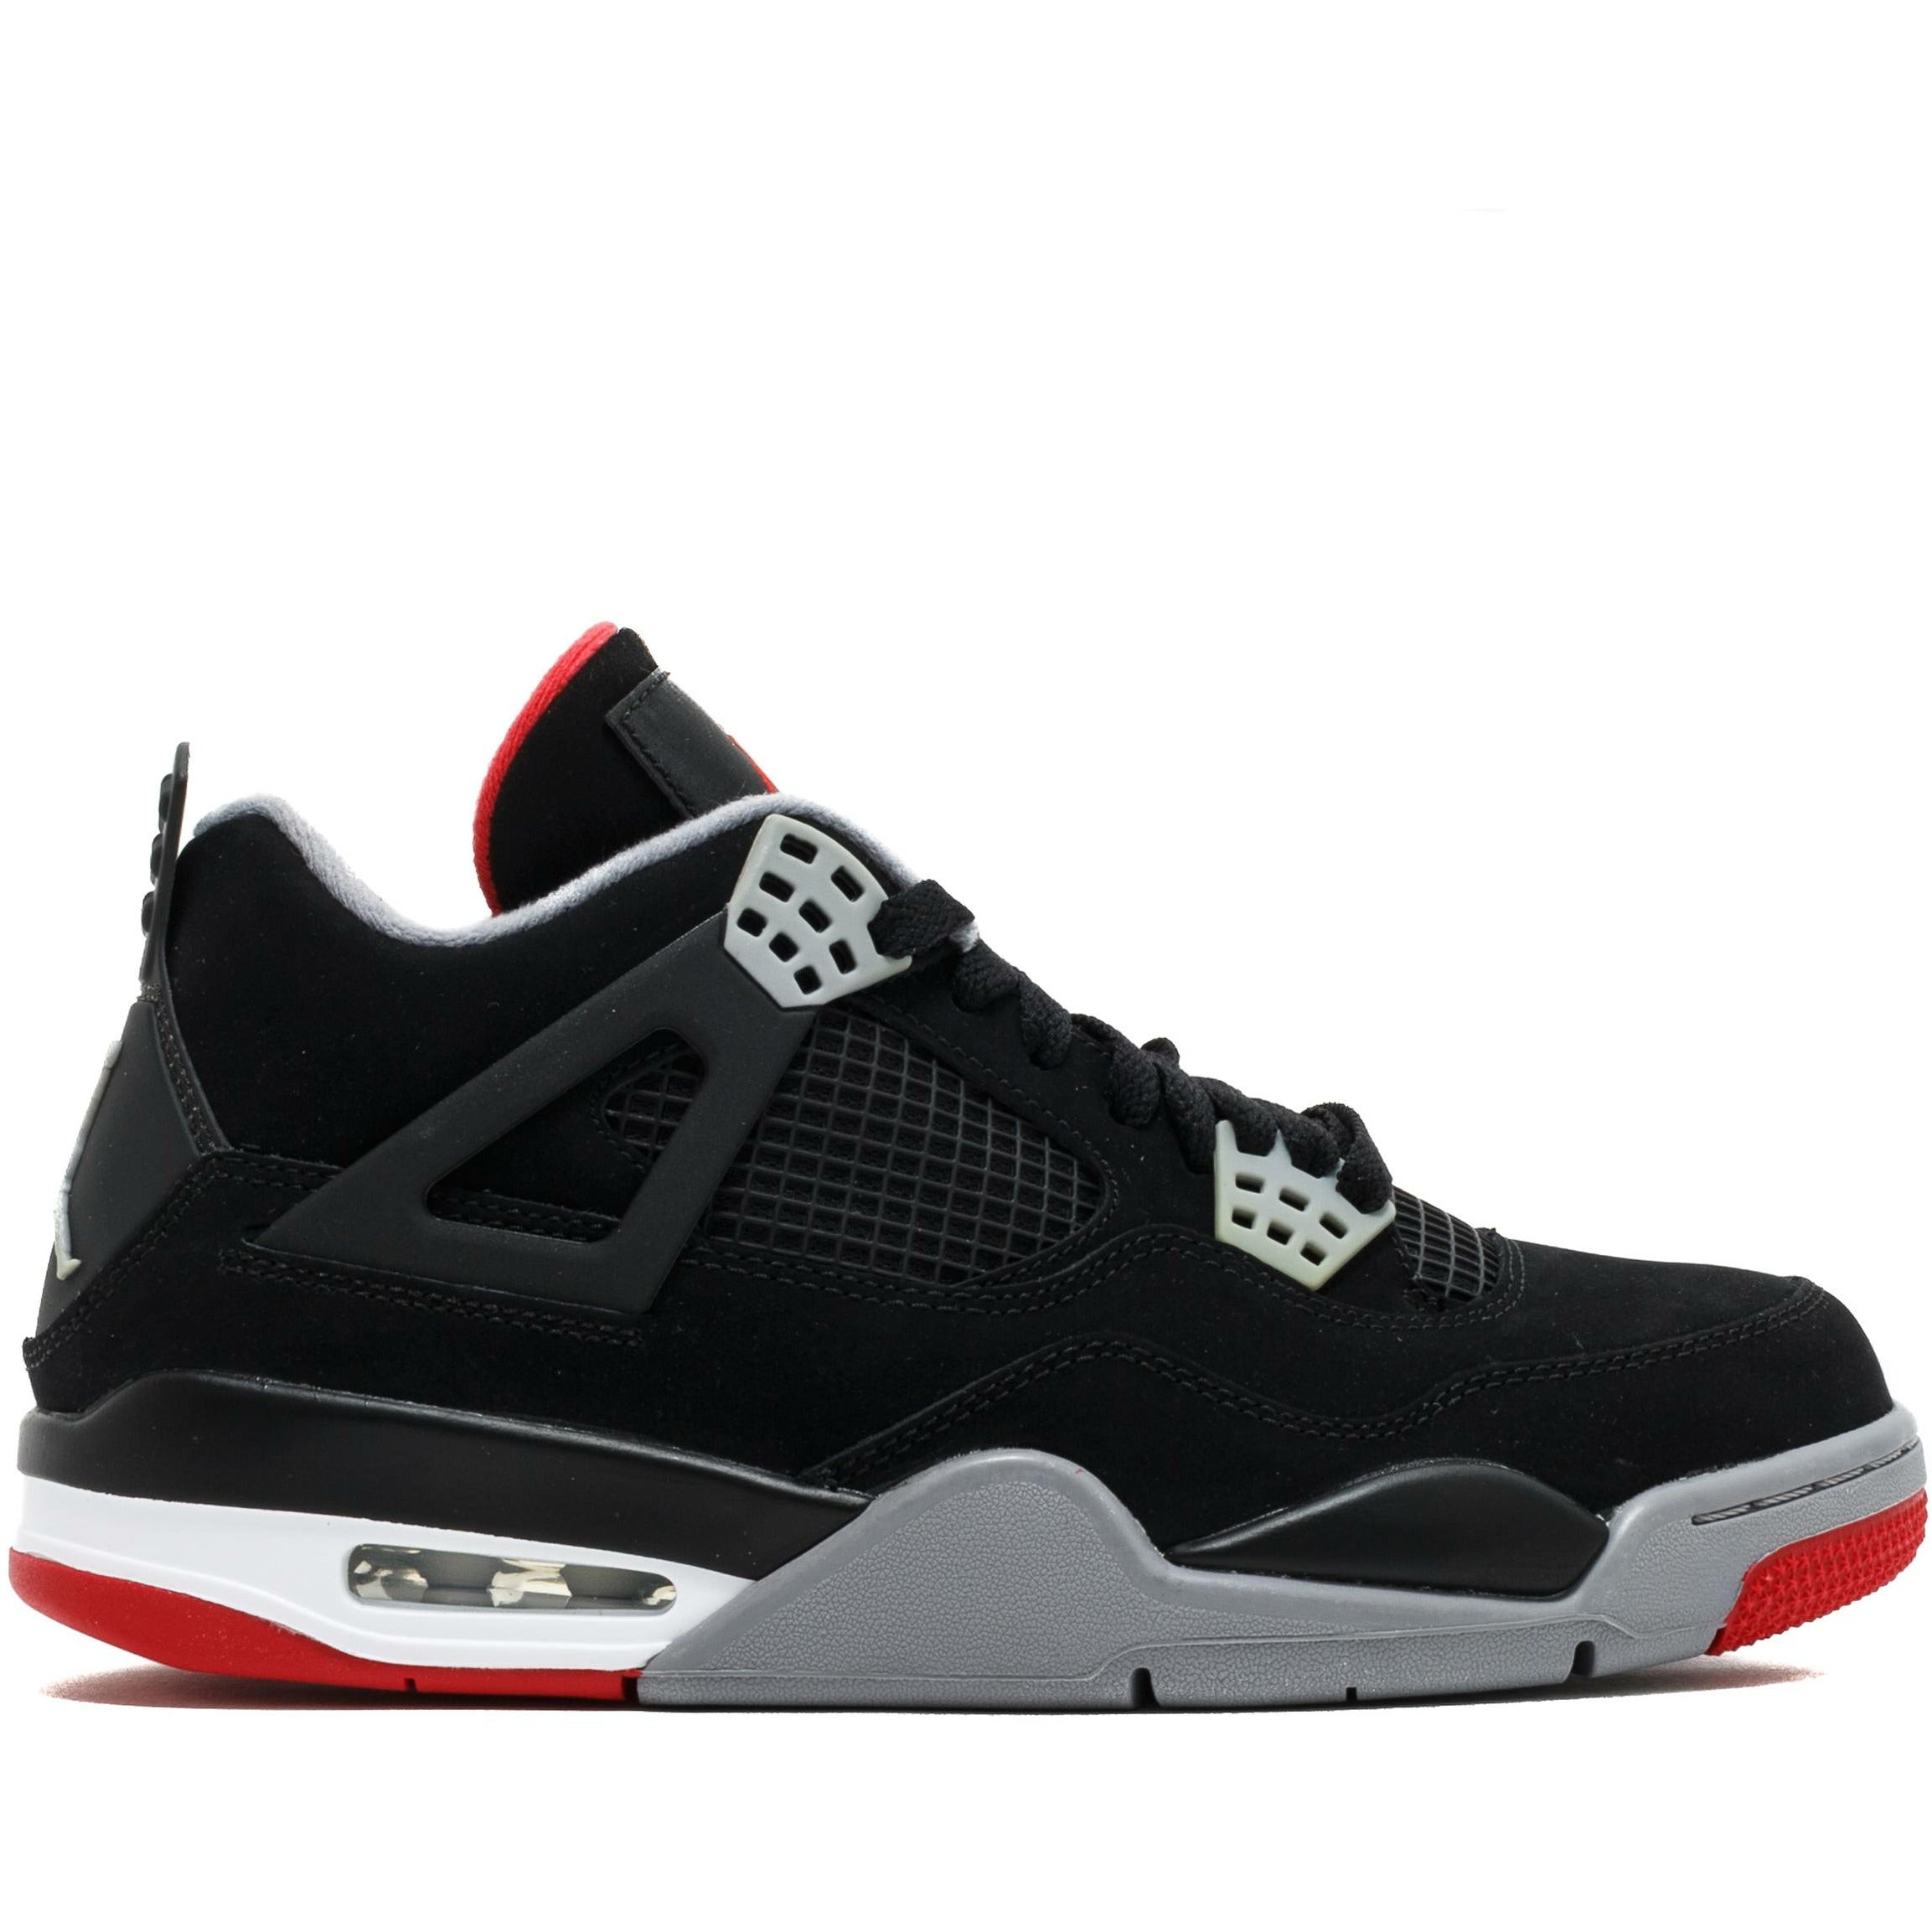 Air Jordan-Air Jordan 4 Retro "Bred / Black Cement" (2012)-mrsneaker